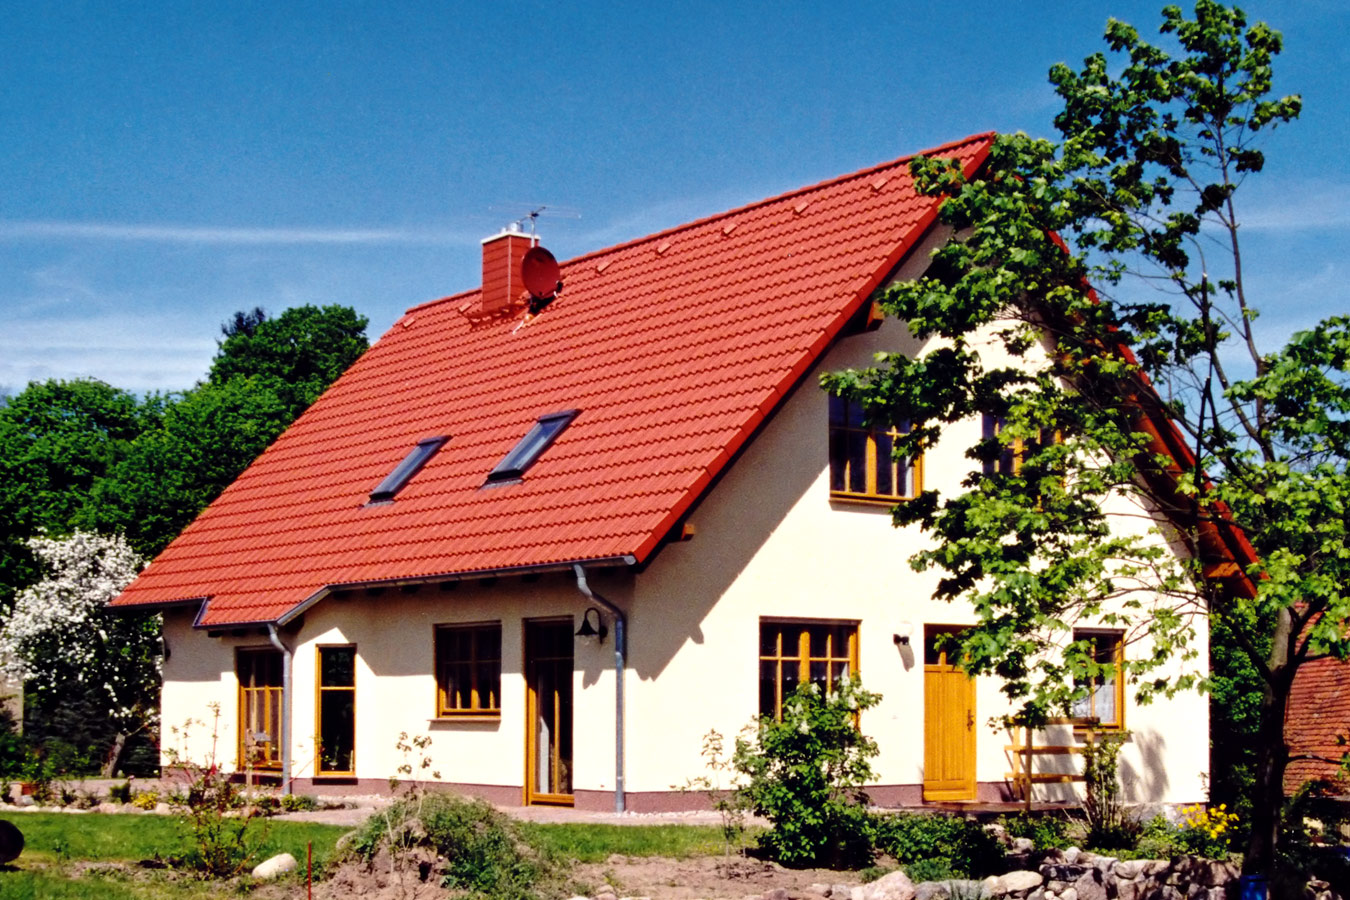 TH-189 Generationenhaus